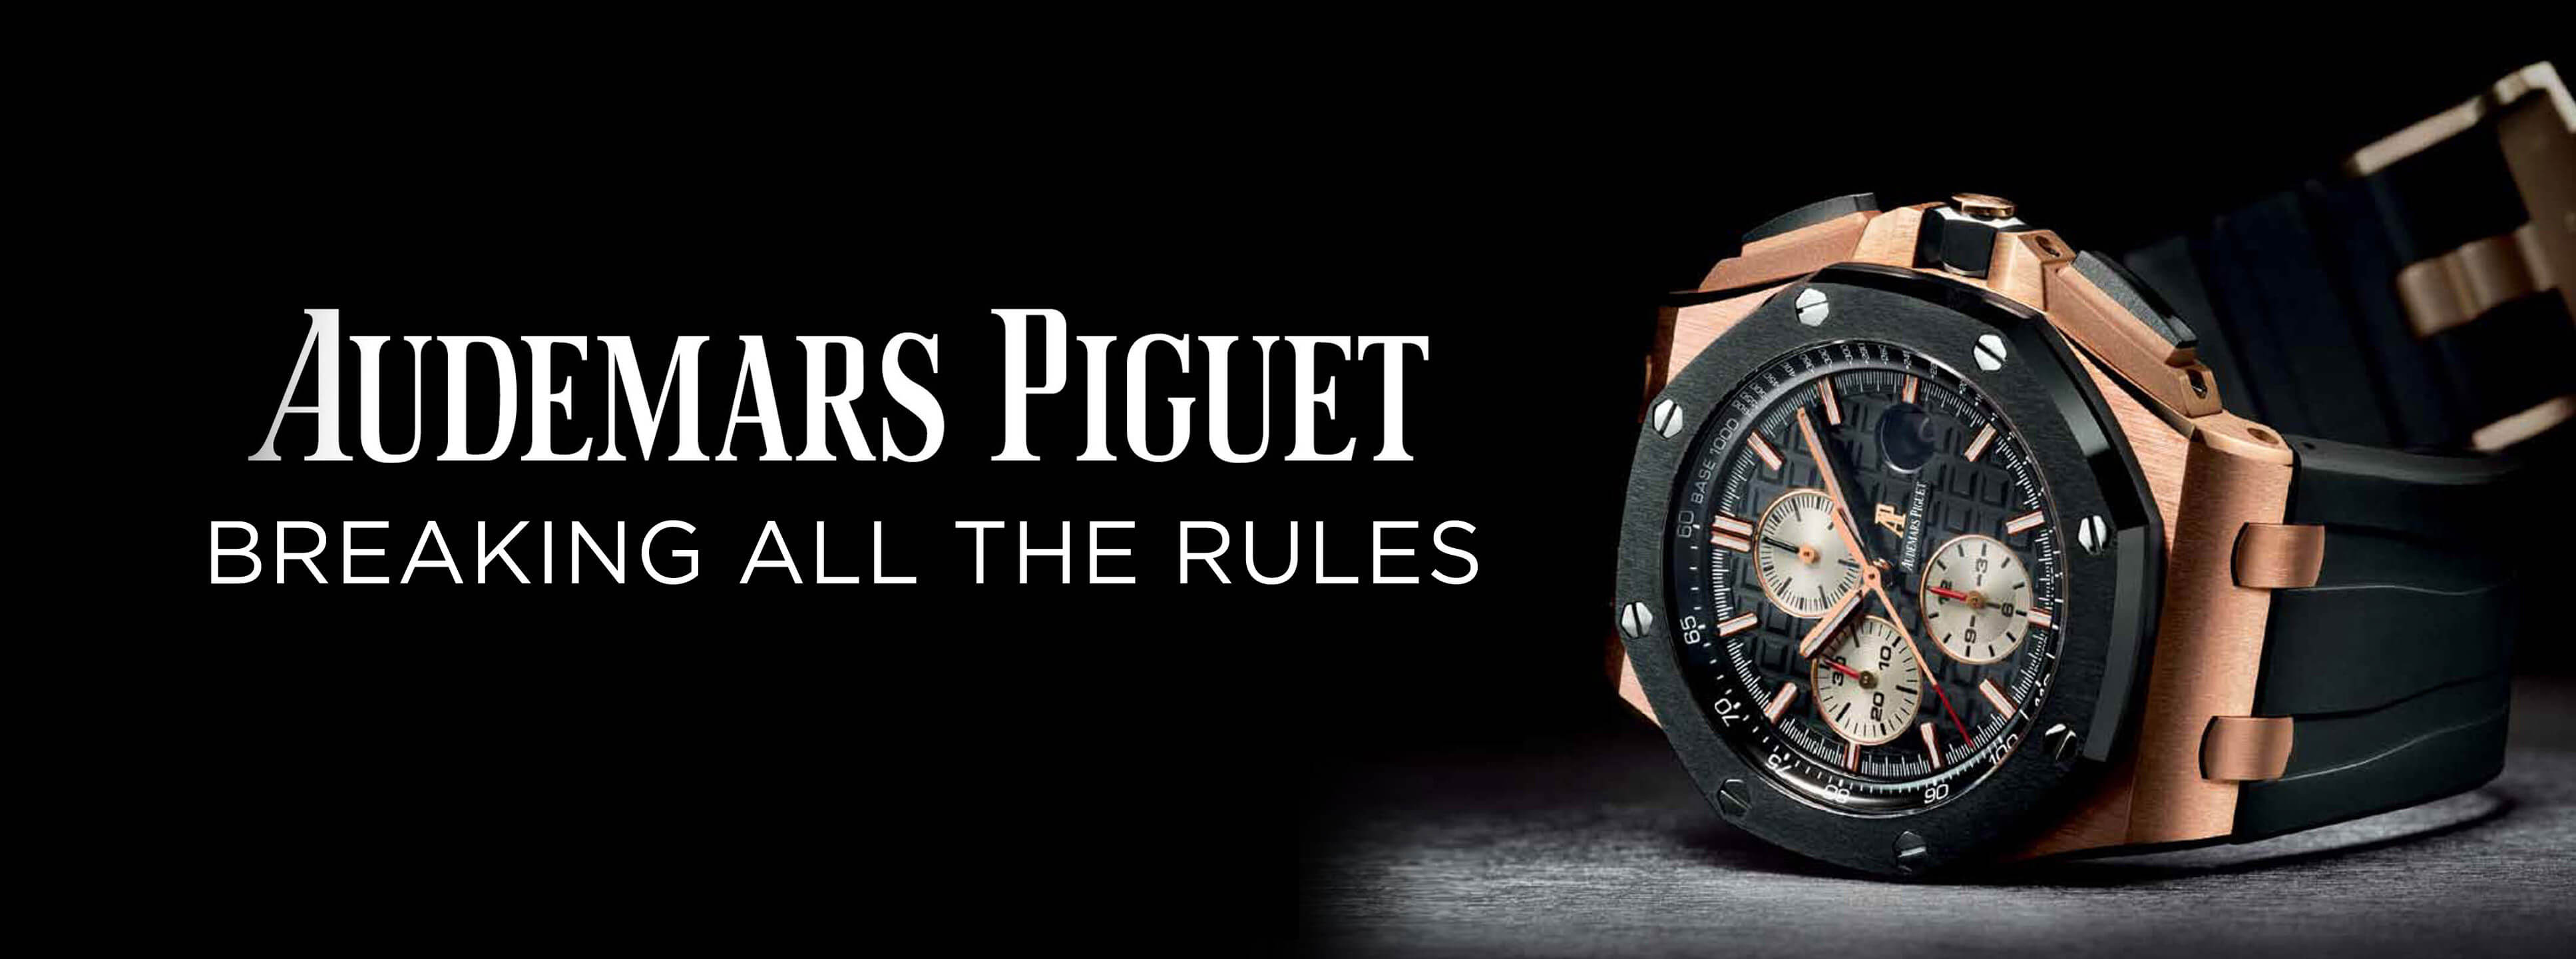 Audemars Piguet - Coming Soon???  Audemars piguet, Piguet, Luxury brand  logo